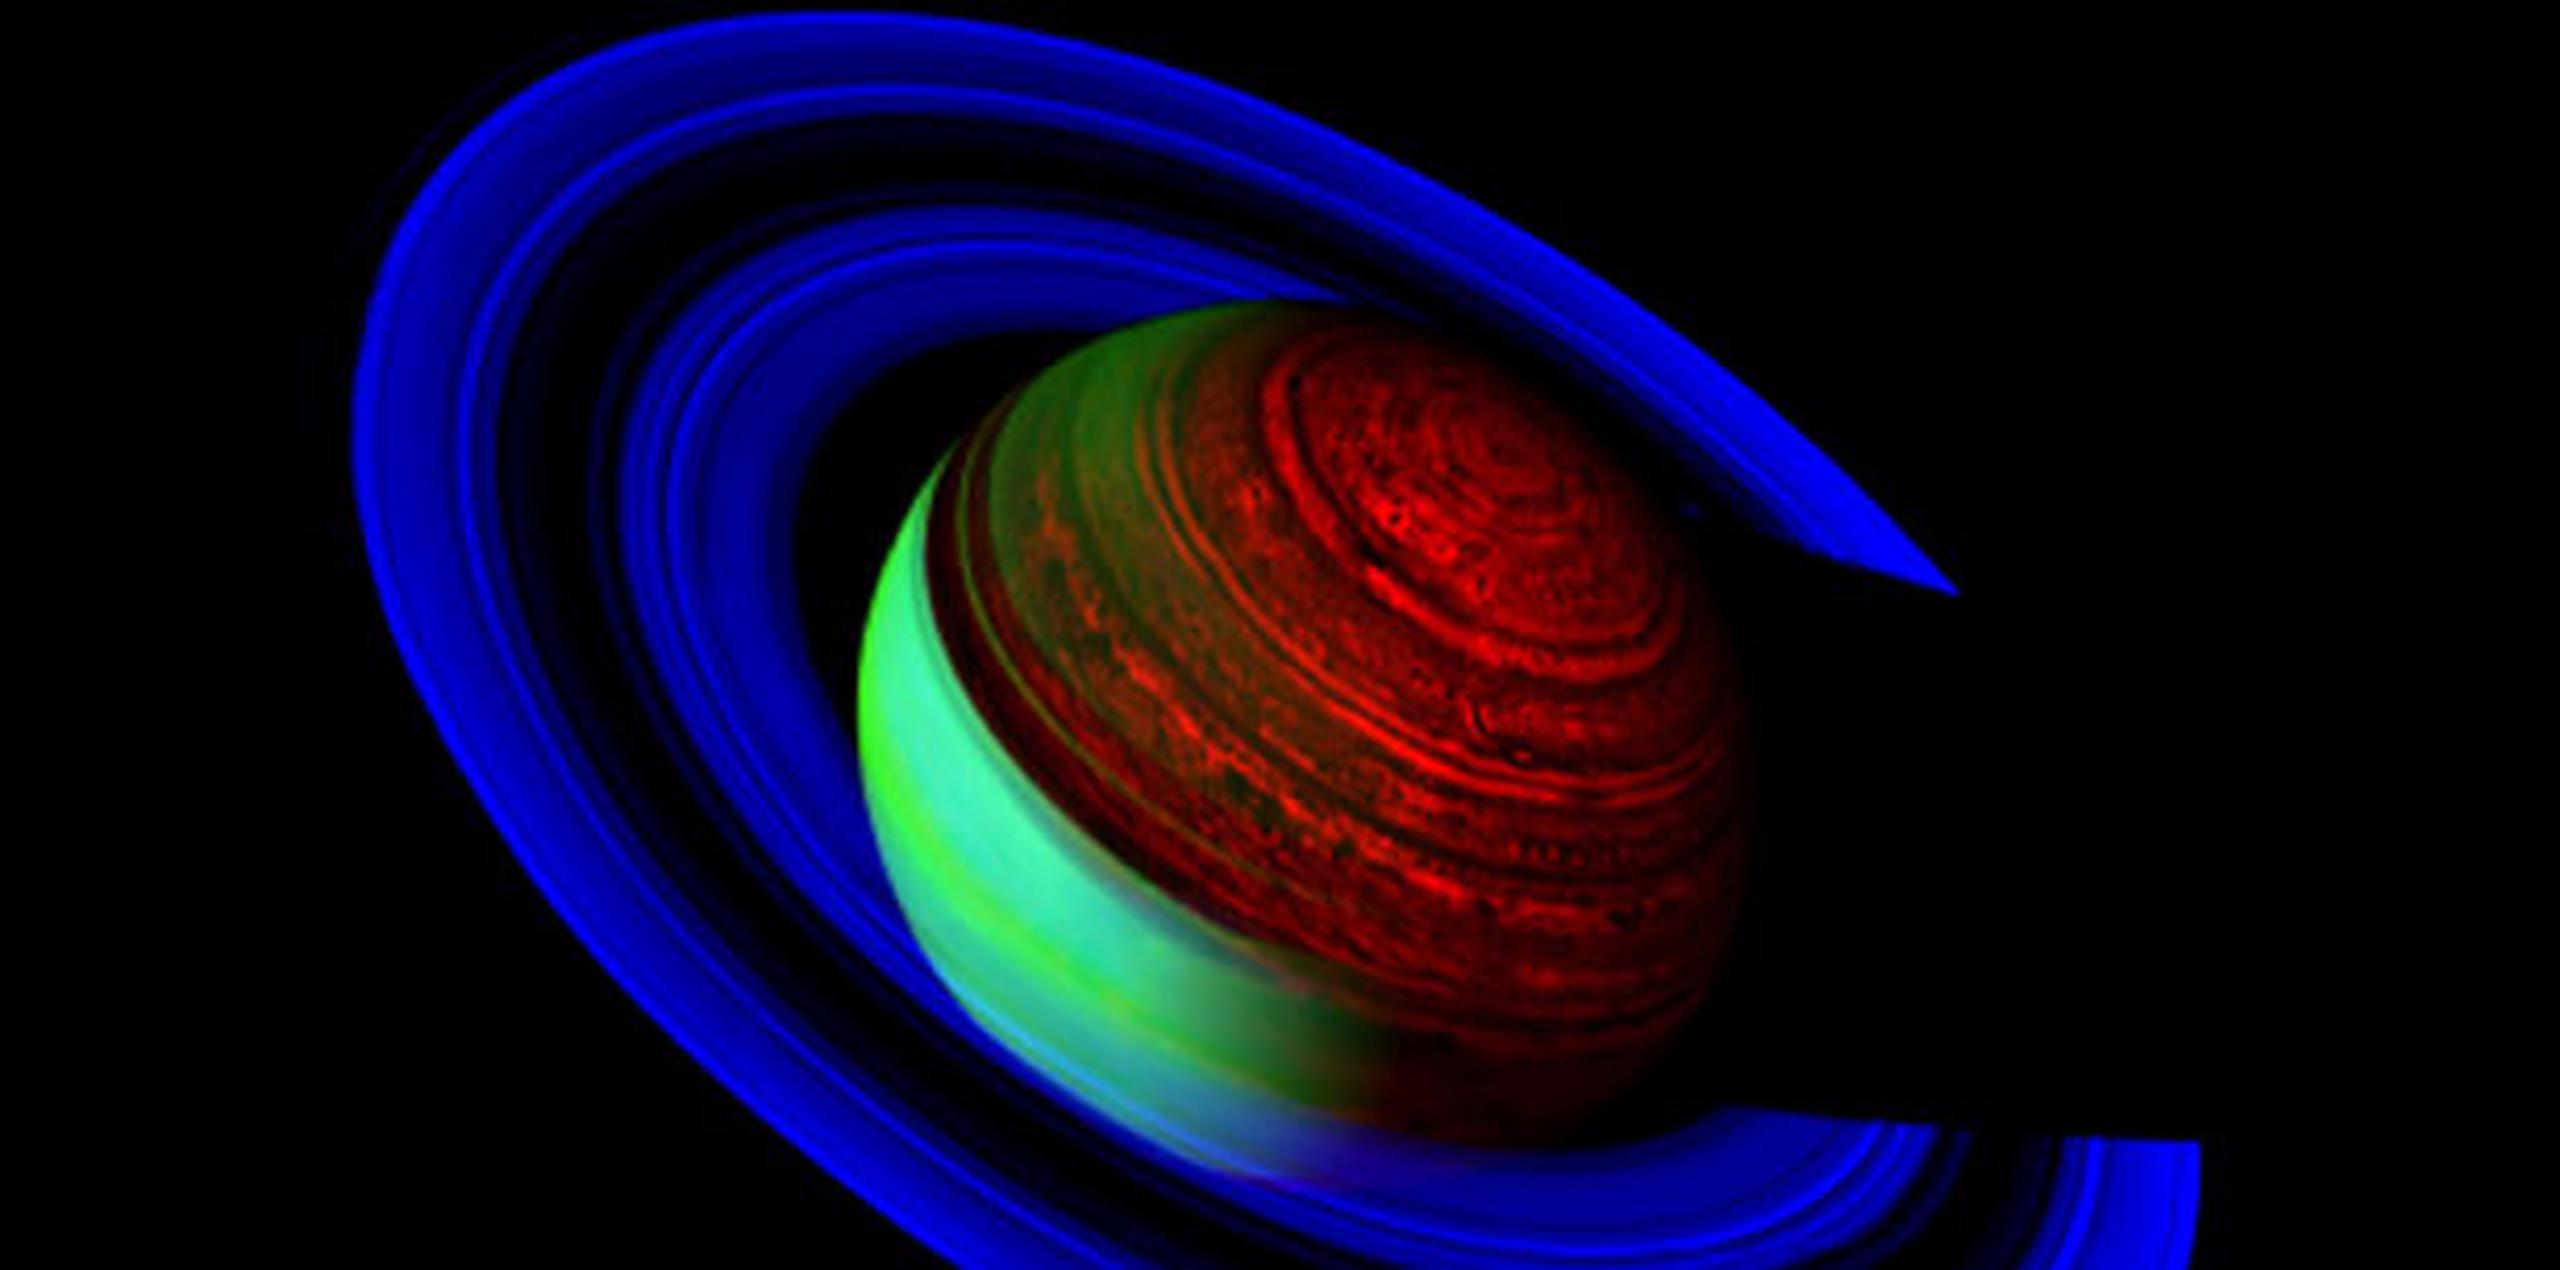 Se calcula que científicos de todo el mundo tardarán décadas en analizar toda la información obtenida por la Cassini desde que fue lanzada, el 15 de octubre de 1997, desde la emblemática base de Cabo Cañaveral (Florida). (EFE)